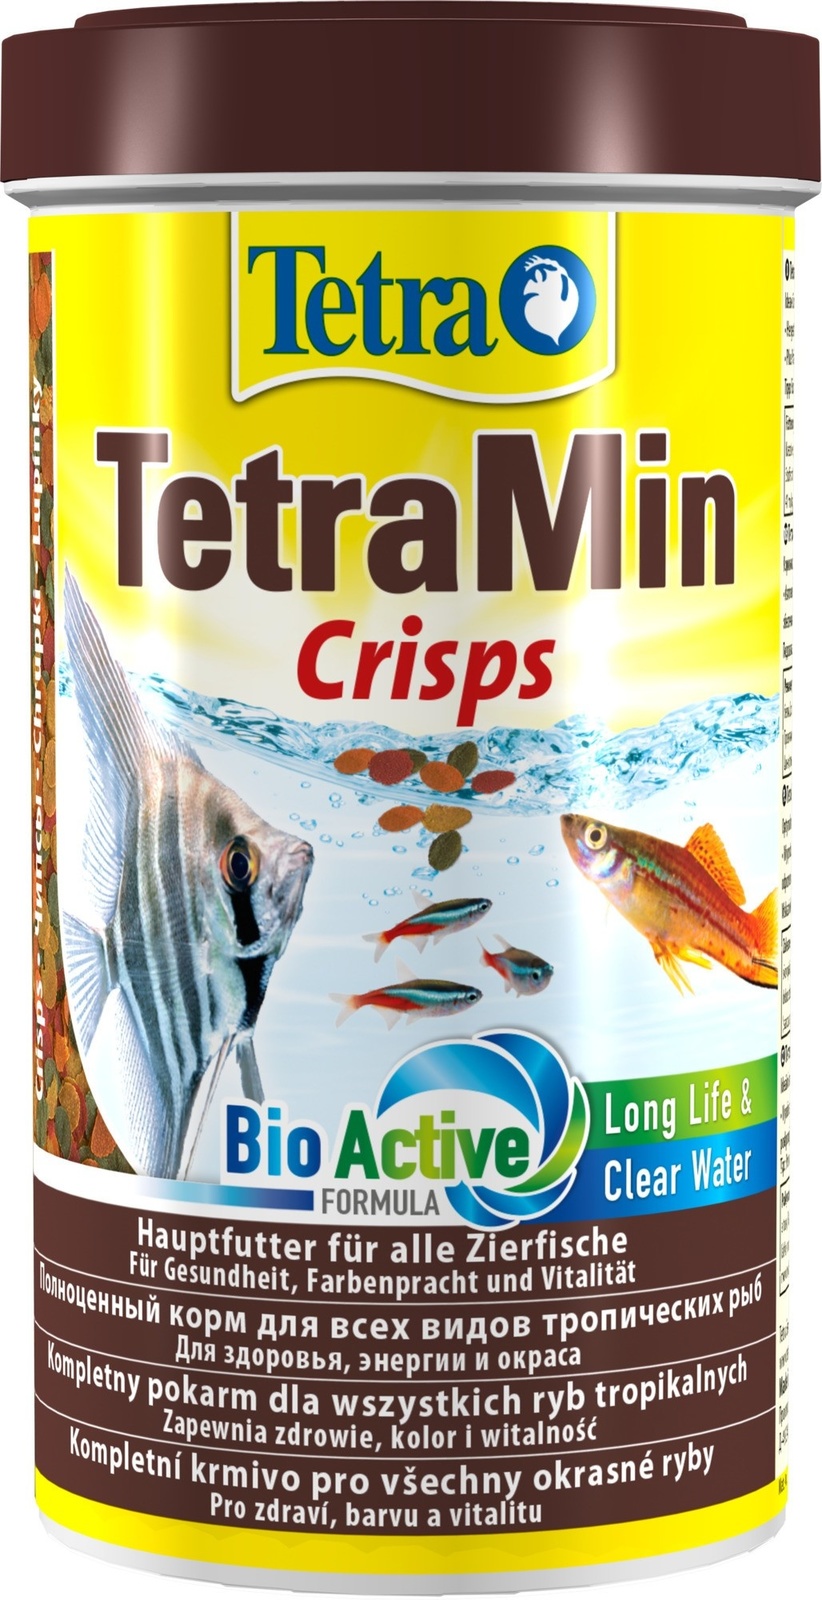 Tetra (корма) Tetra (корма) корм для всех видов тропических рыб, чипсы (110 г) tetra корма tetra корма корм для красных попугаев шарики 110 г